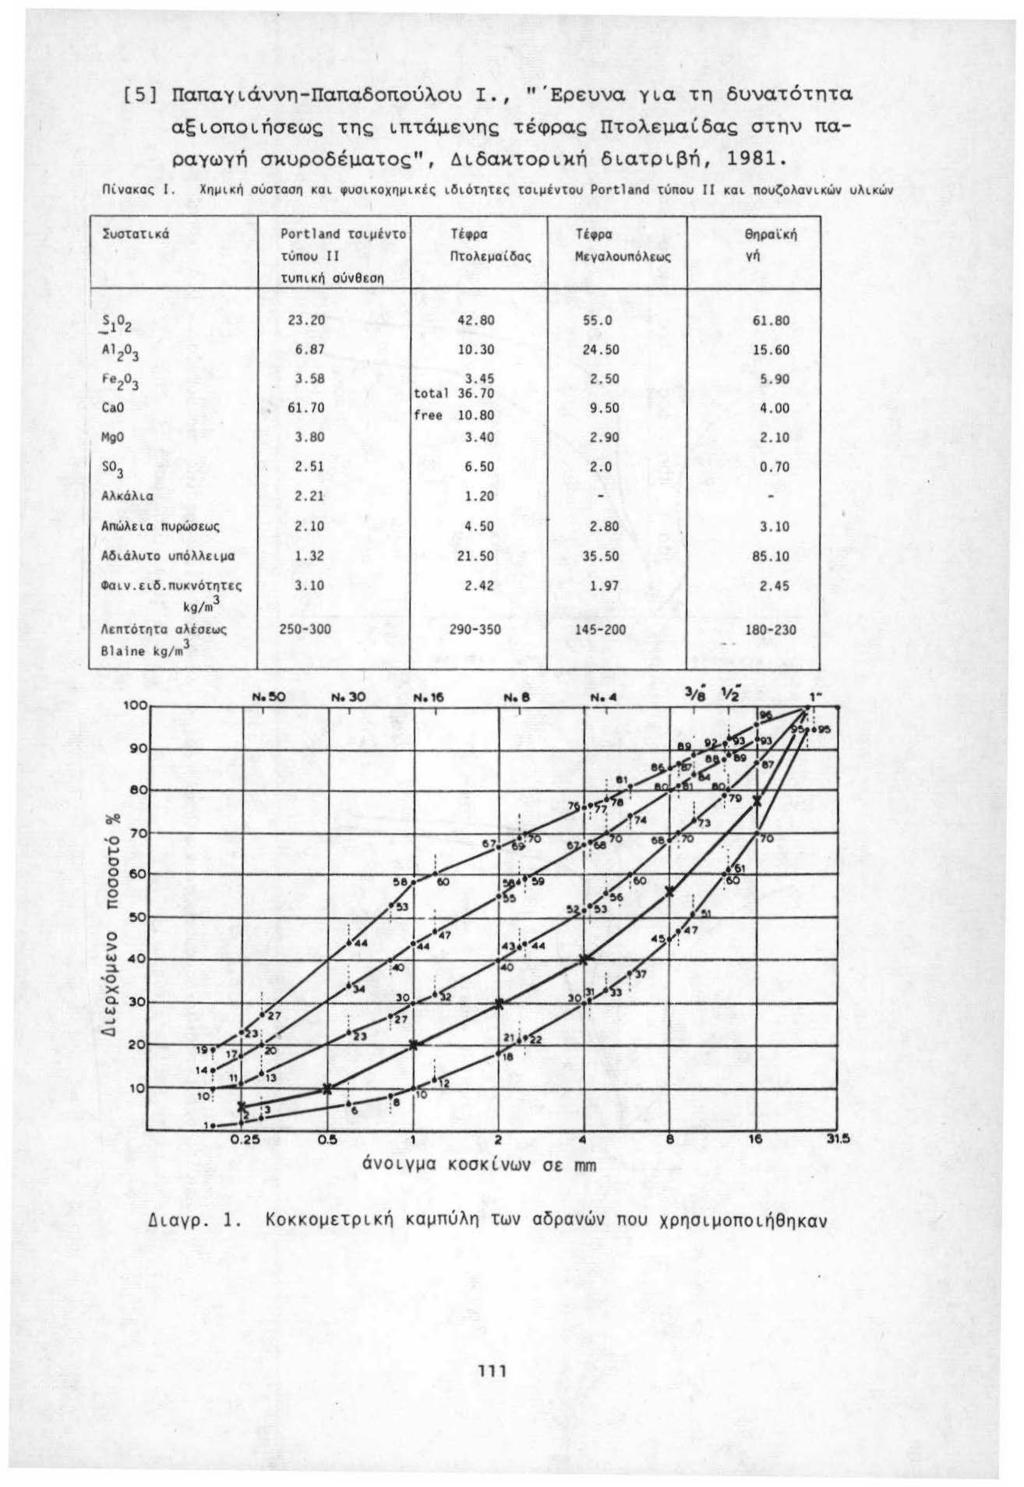 [5] Παπαγιάννη-Παπαδπύλυ, "'Ερευνα για τη δυνατότητα αςιπιήσεως της ιπτάμενης τέφρας πτλεμαί,δας στnν παραγωγή σκυρδέματς", Διδακτρική διατριβή, 1981 Πίνακ α ς 1 Χ ημ ική σiισταση και υσικχημικές